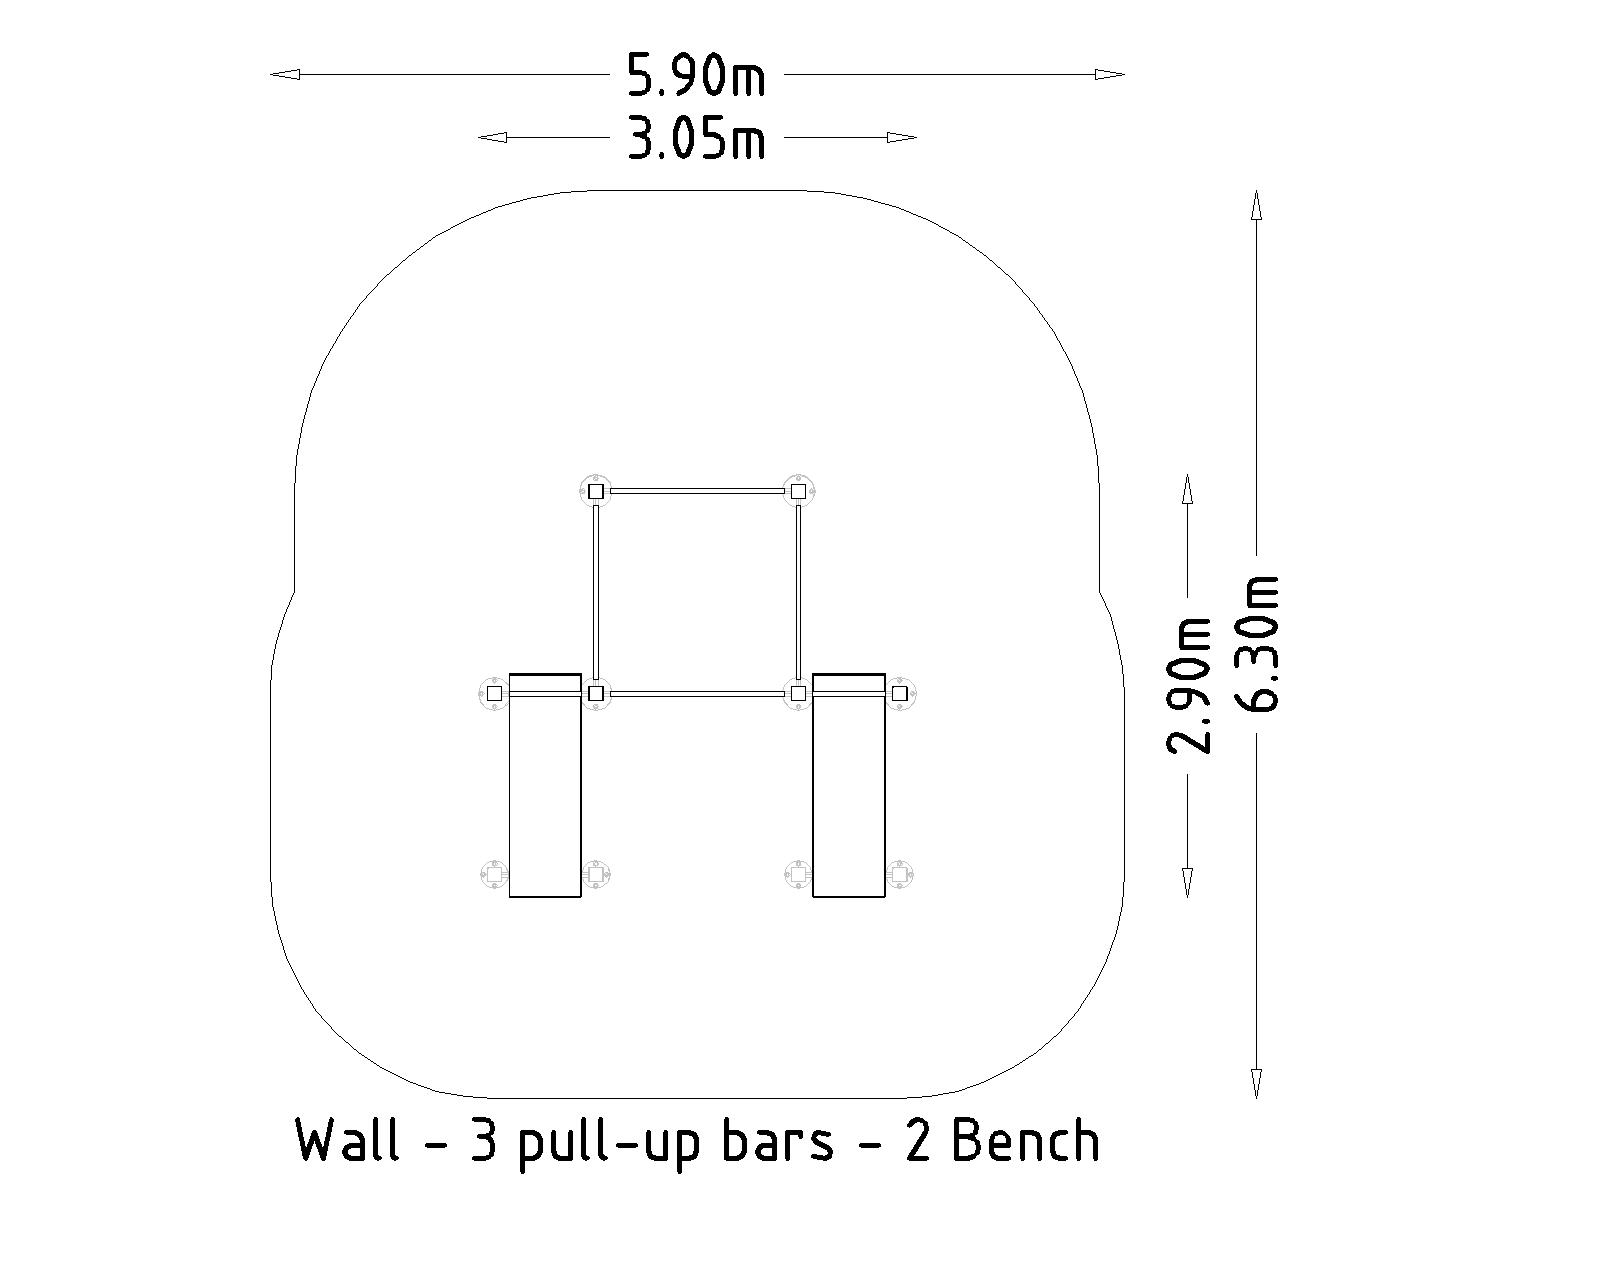 Denfit Wall - 3 Pull Up Bars